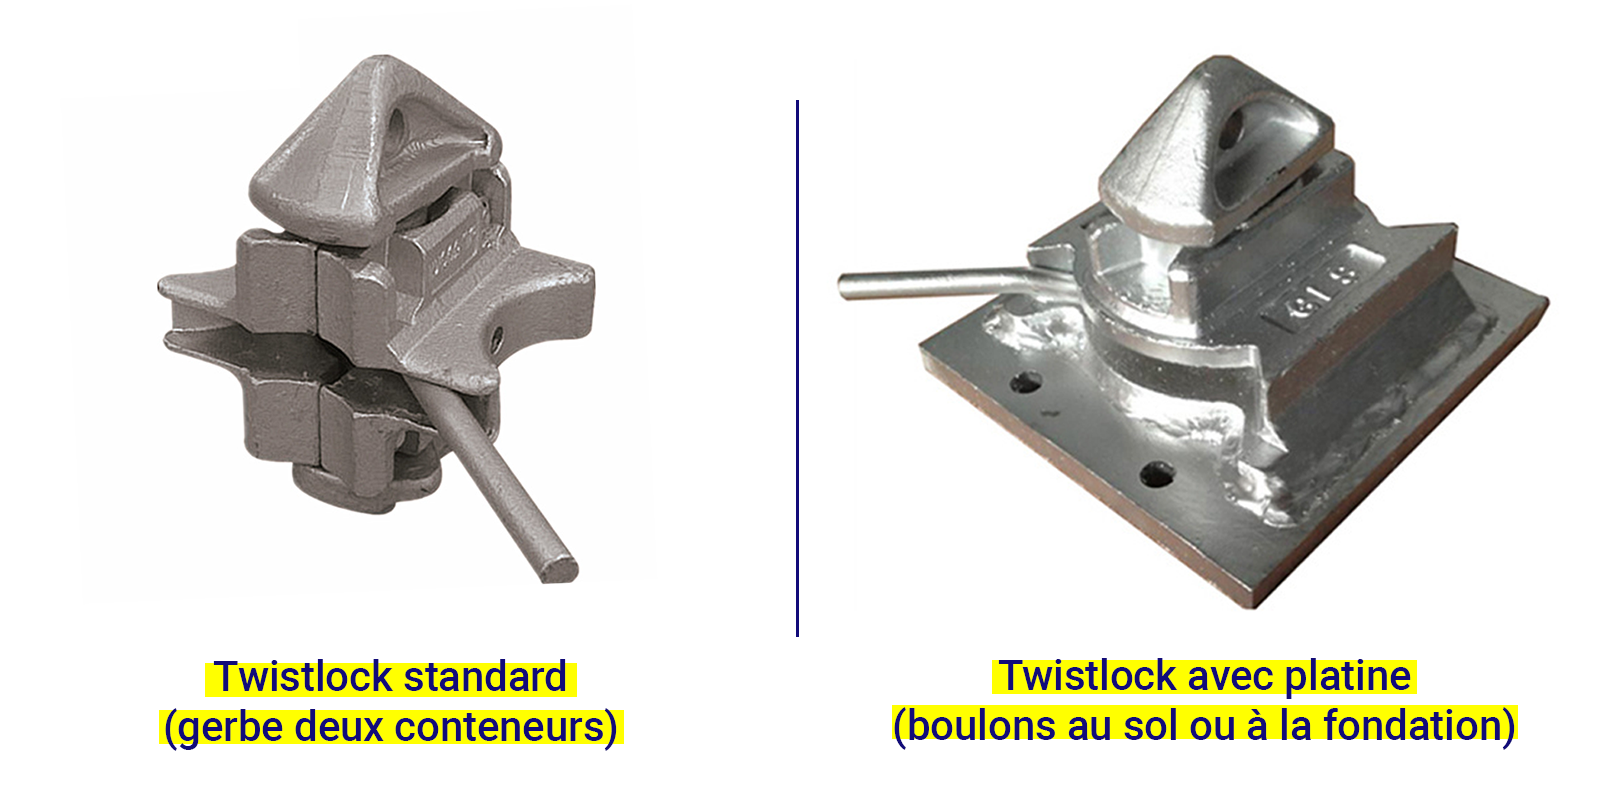 Comparaison d'une Twistlock standard et avec platine